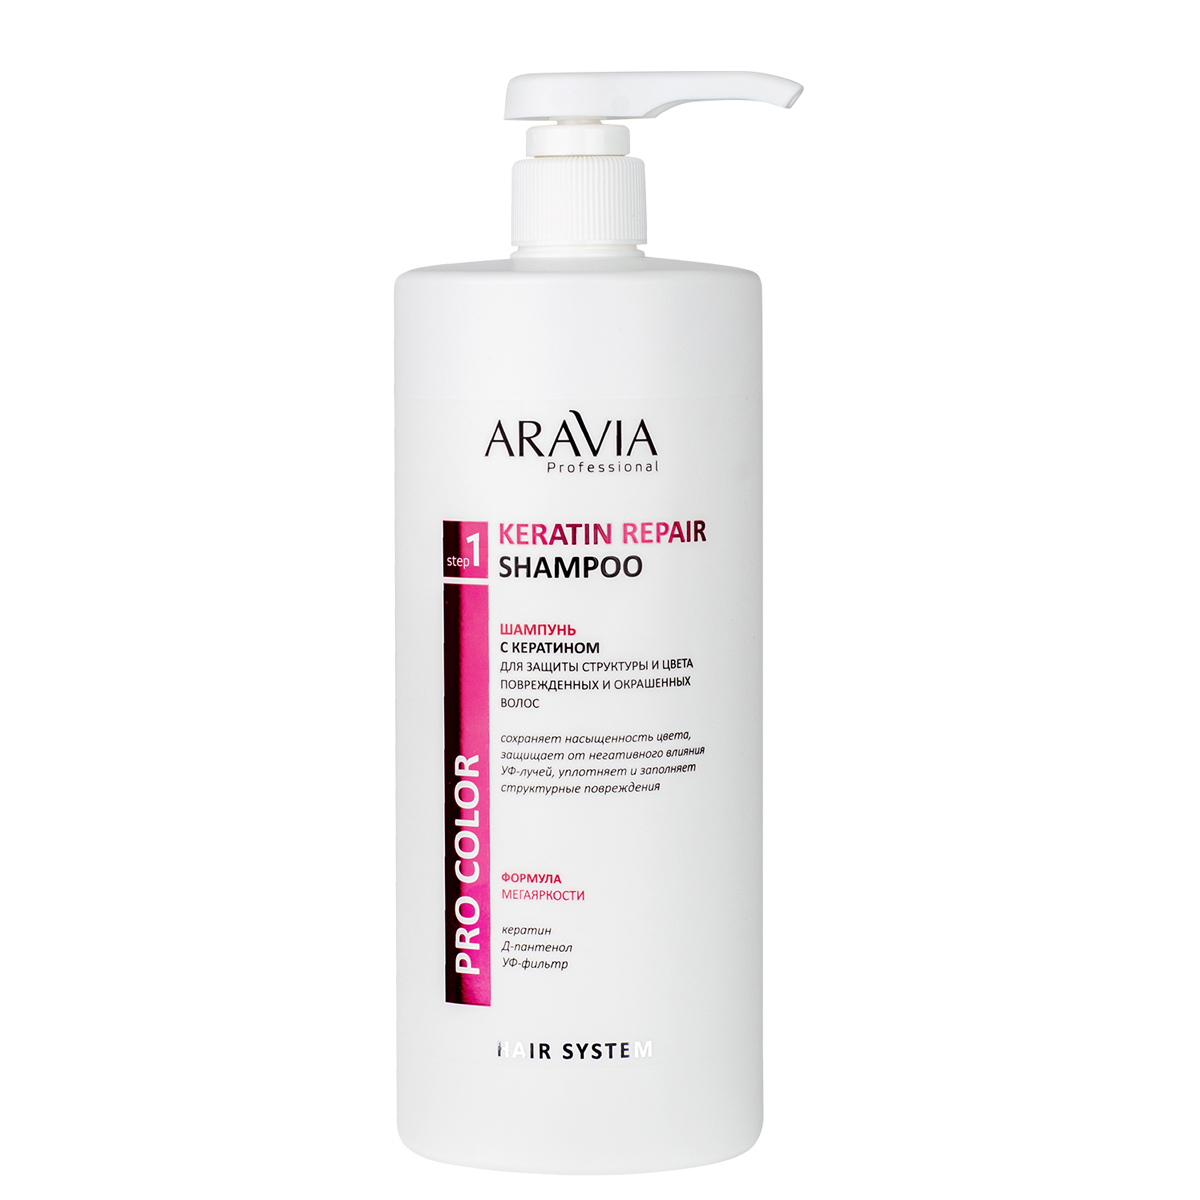 Aravia Professional Шампунь с кератином для защиты структуры и цвета поврежденных и окрашенных волос Keratin Repair Shampoo, 1000 мл (Aravia Professional, Уход за волосами)